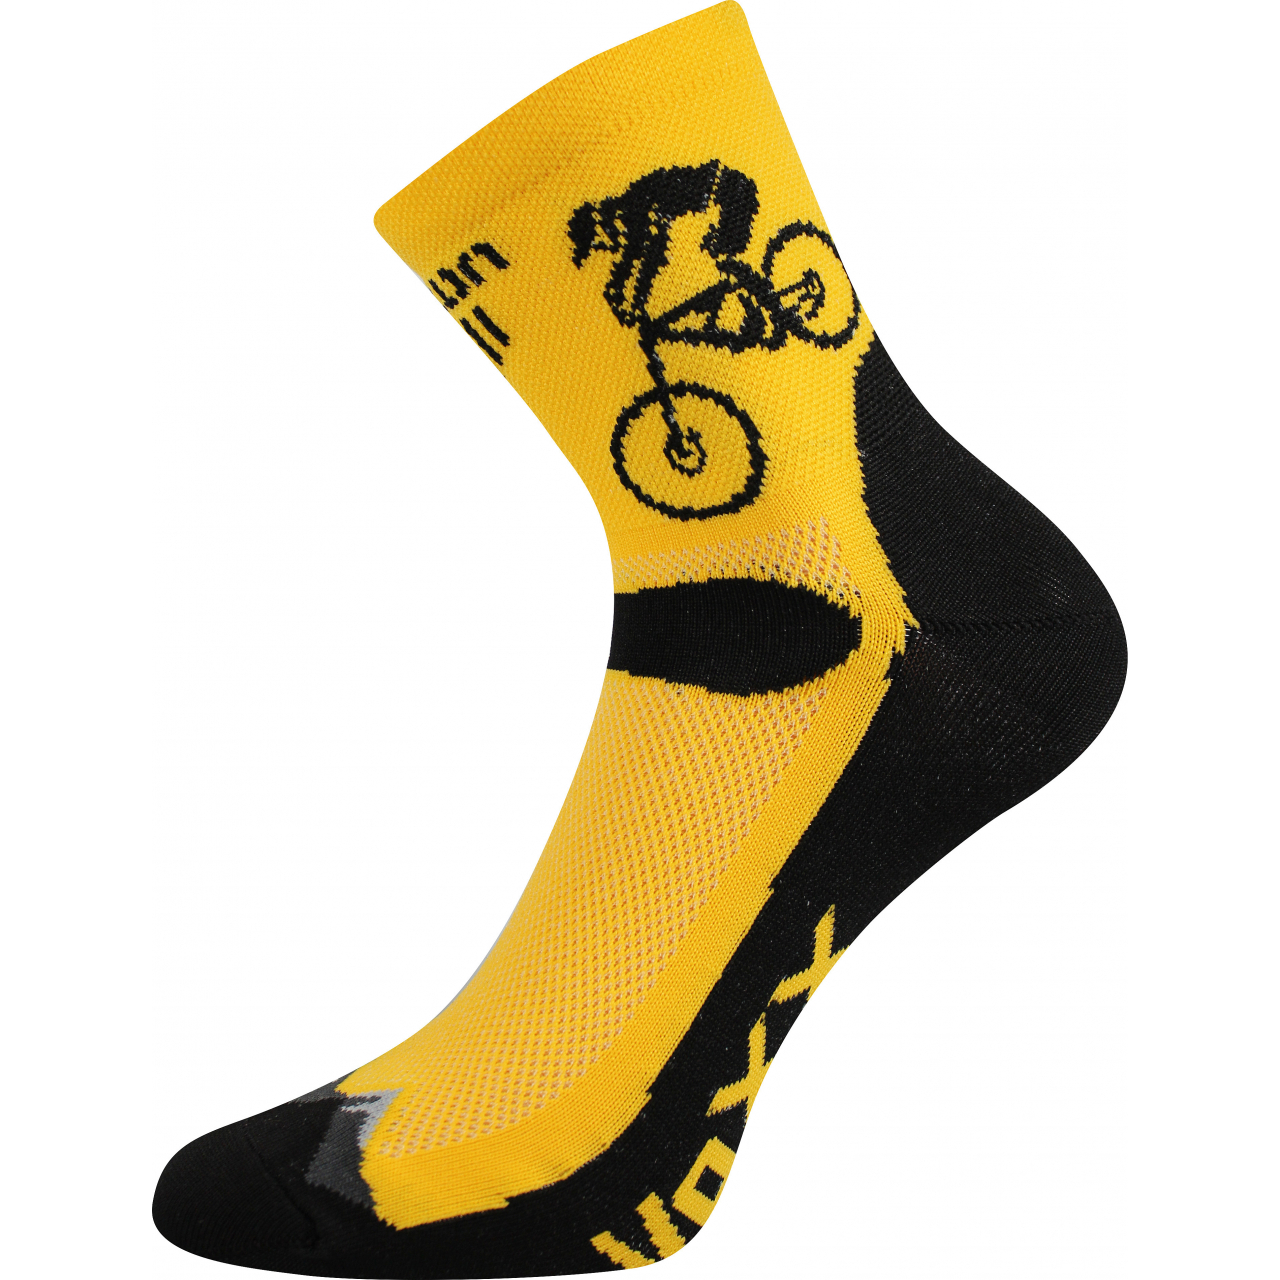 Ponožky sportovní unisex Voxx Ralf X Kolo - žluté-černé, 43-46